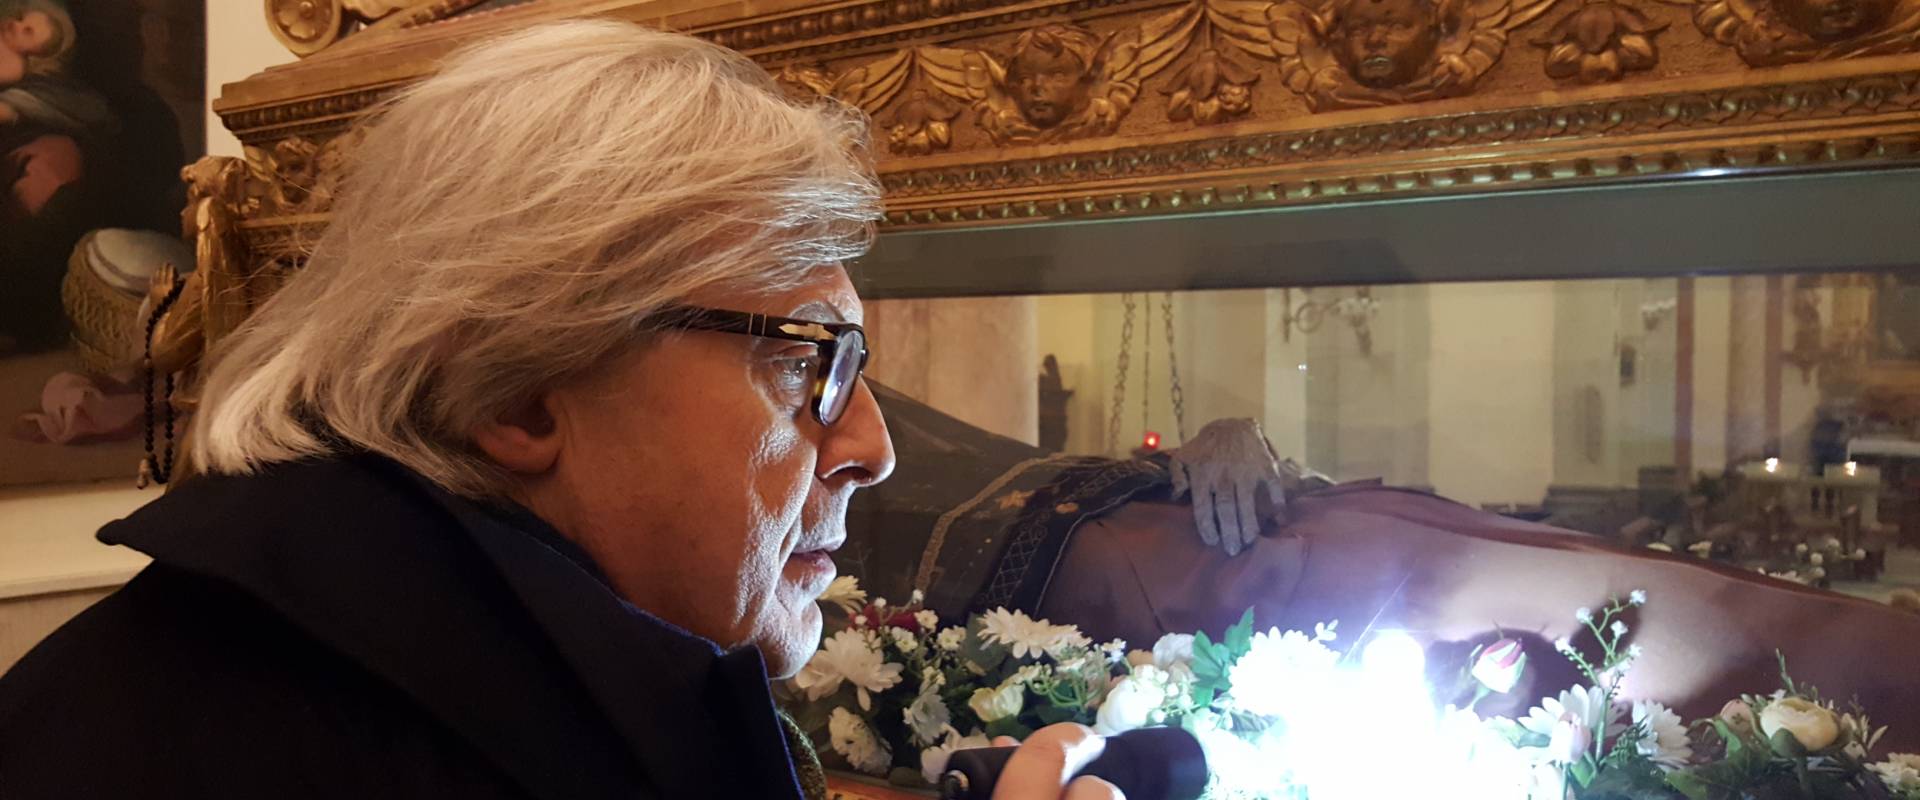 Vittorio Sgarbi guarda il corpo incorrotto di Santo Amato Ronconi photo by Marco Musmeci